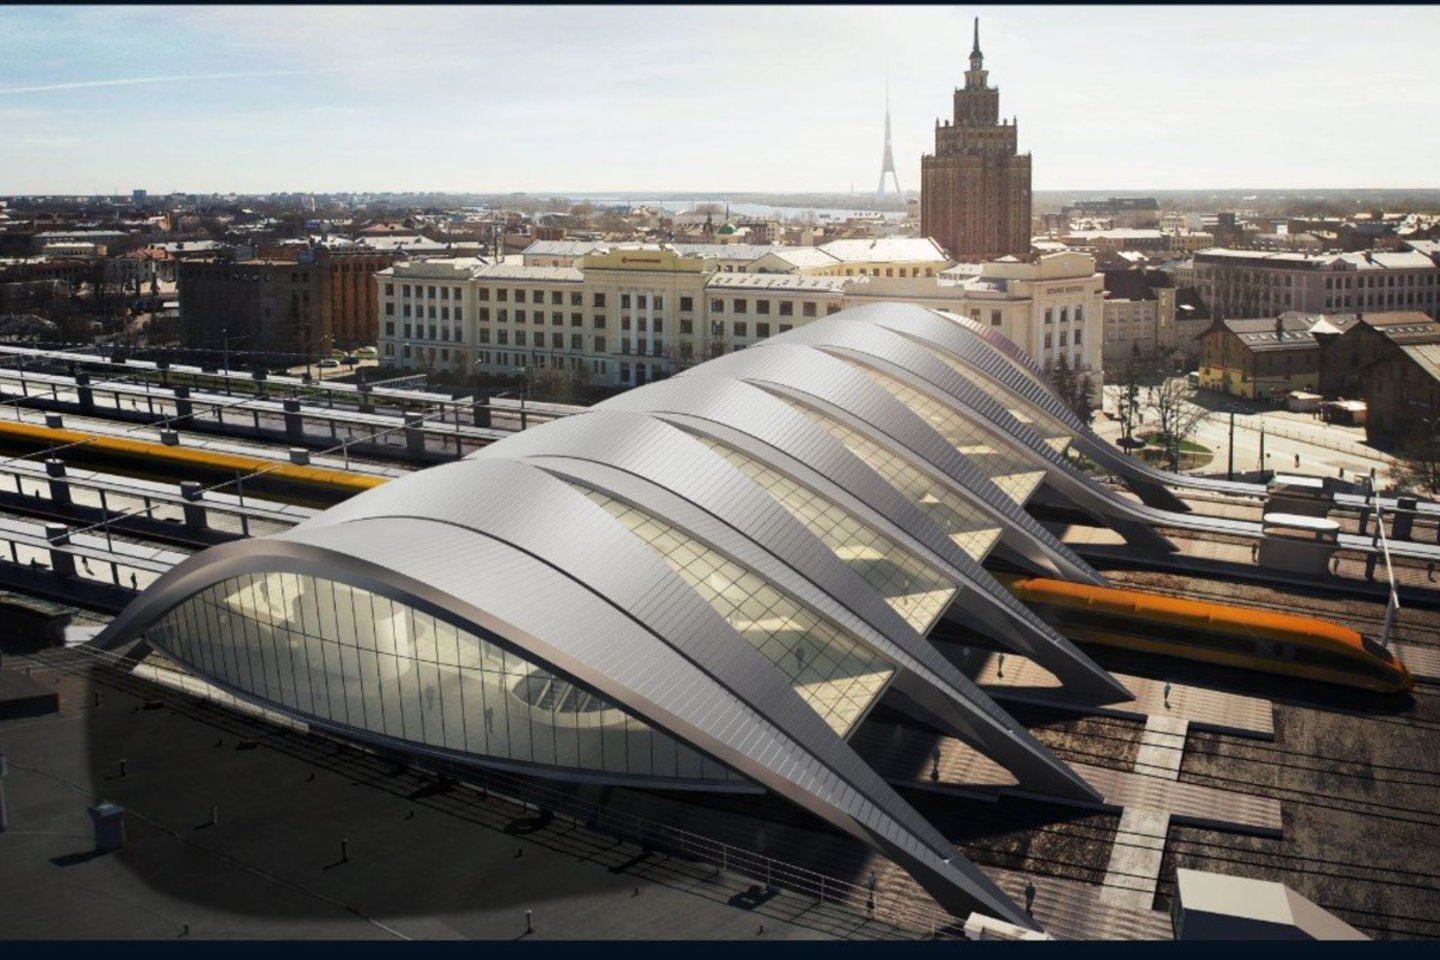 Įgyvendinus projektą „Rail Baltica“, Rygos centre bus sukurtas modernus multimodalinis transporto mazgas, kuris, kaip teigiama, padidins mobilumą, saugumą, prieinamumą ir suteiks Rygai naujų bruožų<br>Eiropas Dzelzceļa līnijas vizual.